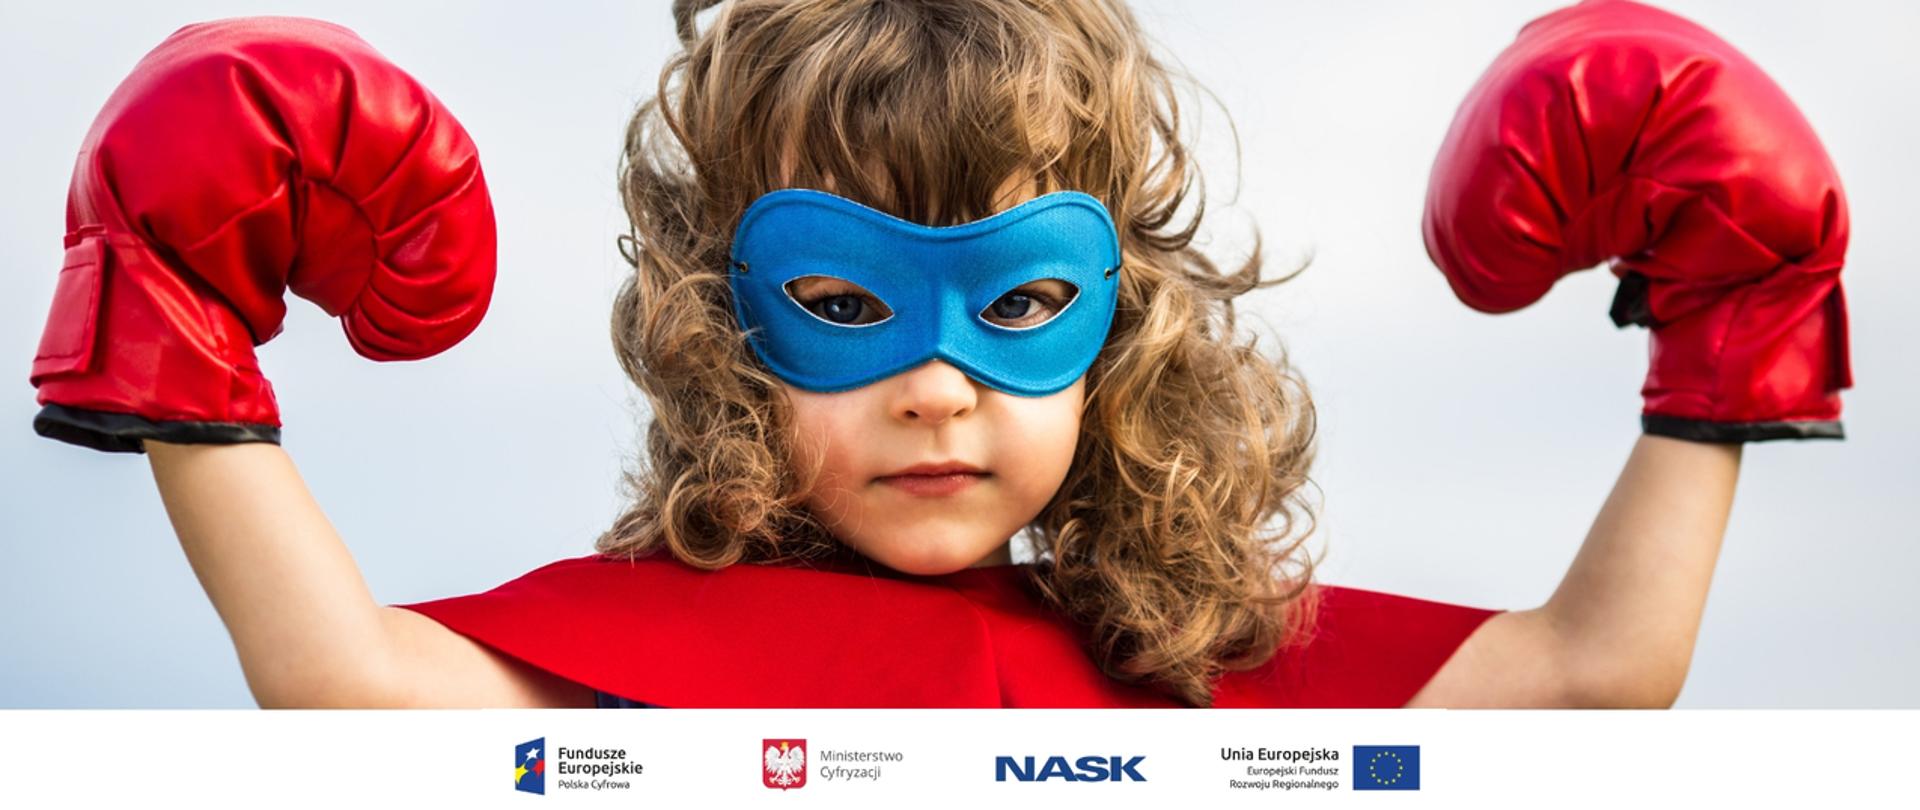 Zdjęcie przedstawia dziewczynkę w kostiumie superbohaterki z maską na oczach i rękawicami bokserskimi na dłoniach - rączki ma uniesione w górę w geście symbolizującym siłę. U dołu znajduje się pasek logotypów: Europejskie Fundusze Polska Cyfrowa, Ministerstwo Cyfryzacji, NASK i Unia Europejska Europejski Fundusz Rozwoju Regionalnego.